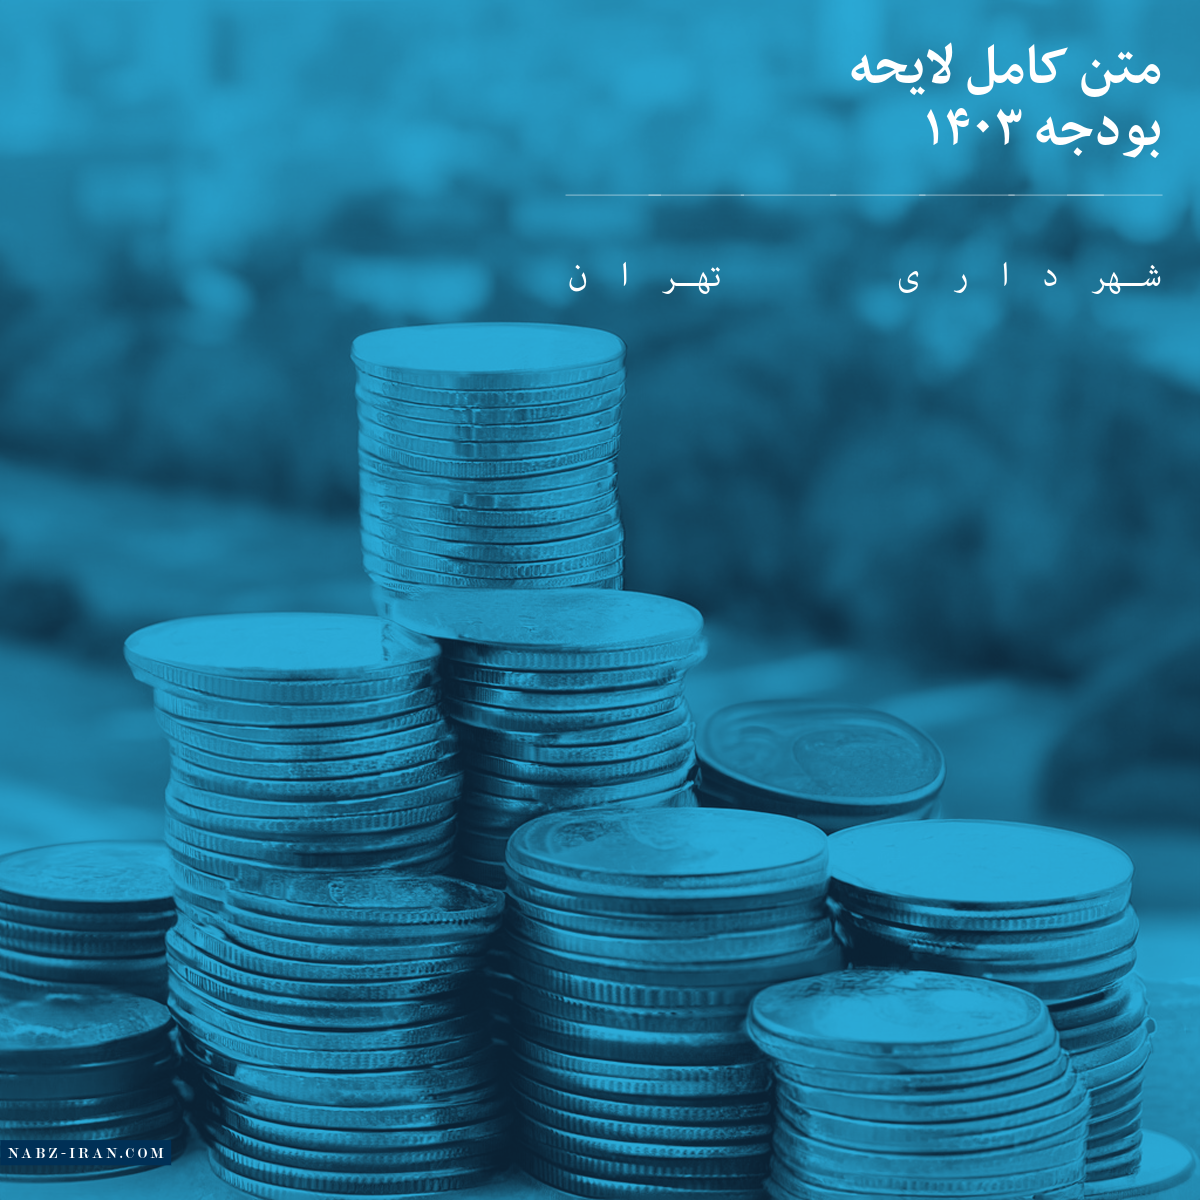 متن کامل بودجه شهرداری تهران